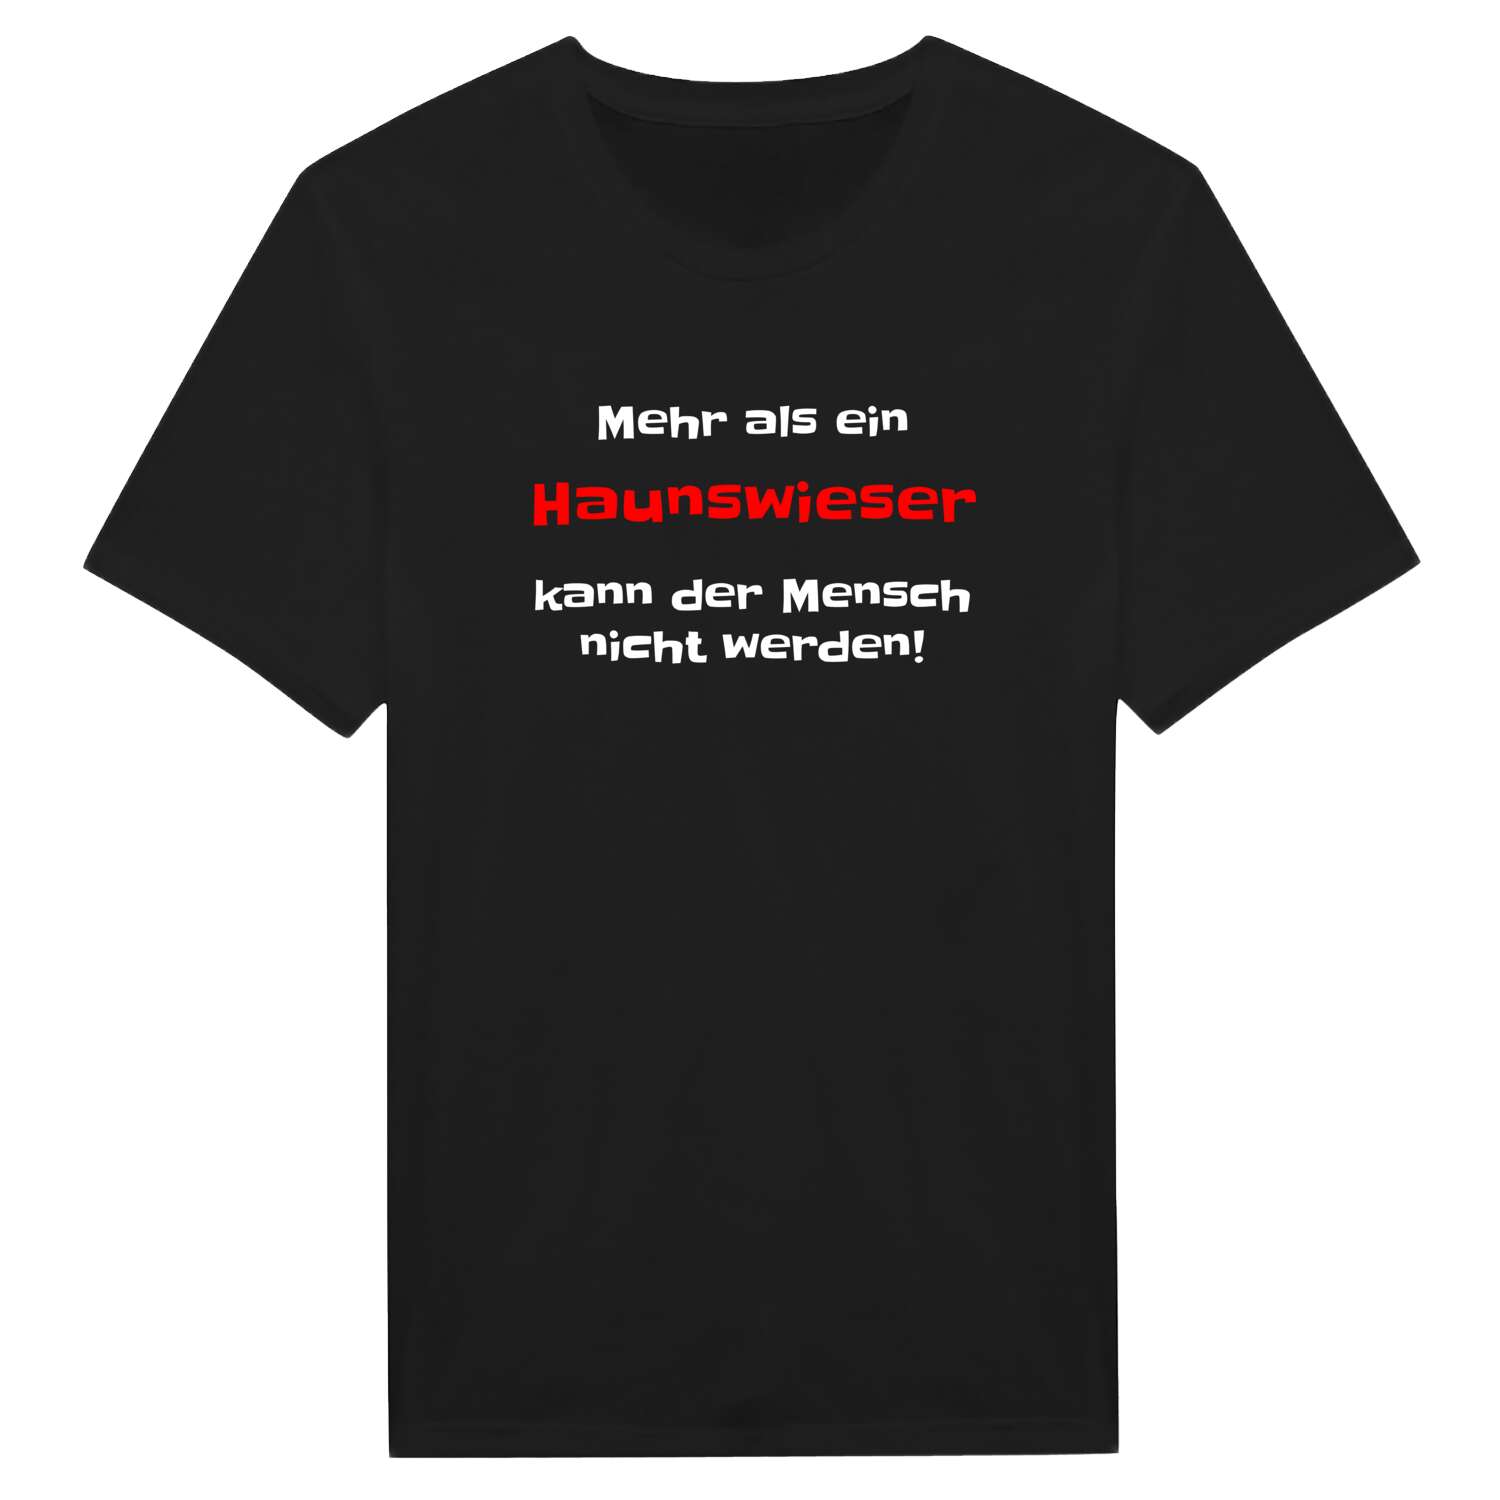 Haunswies T-Shirt »Mehr als ein«